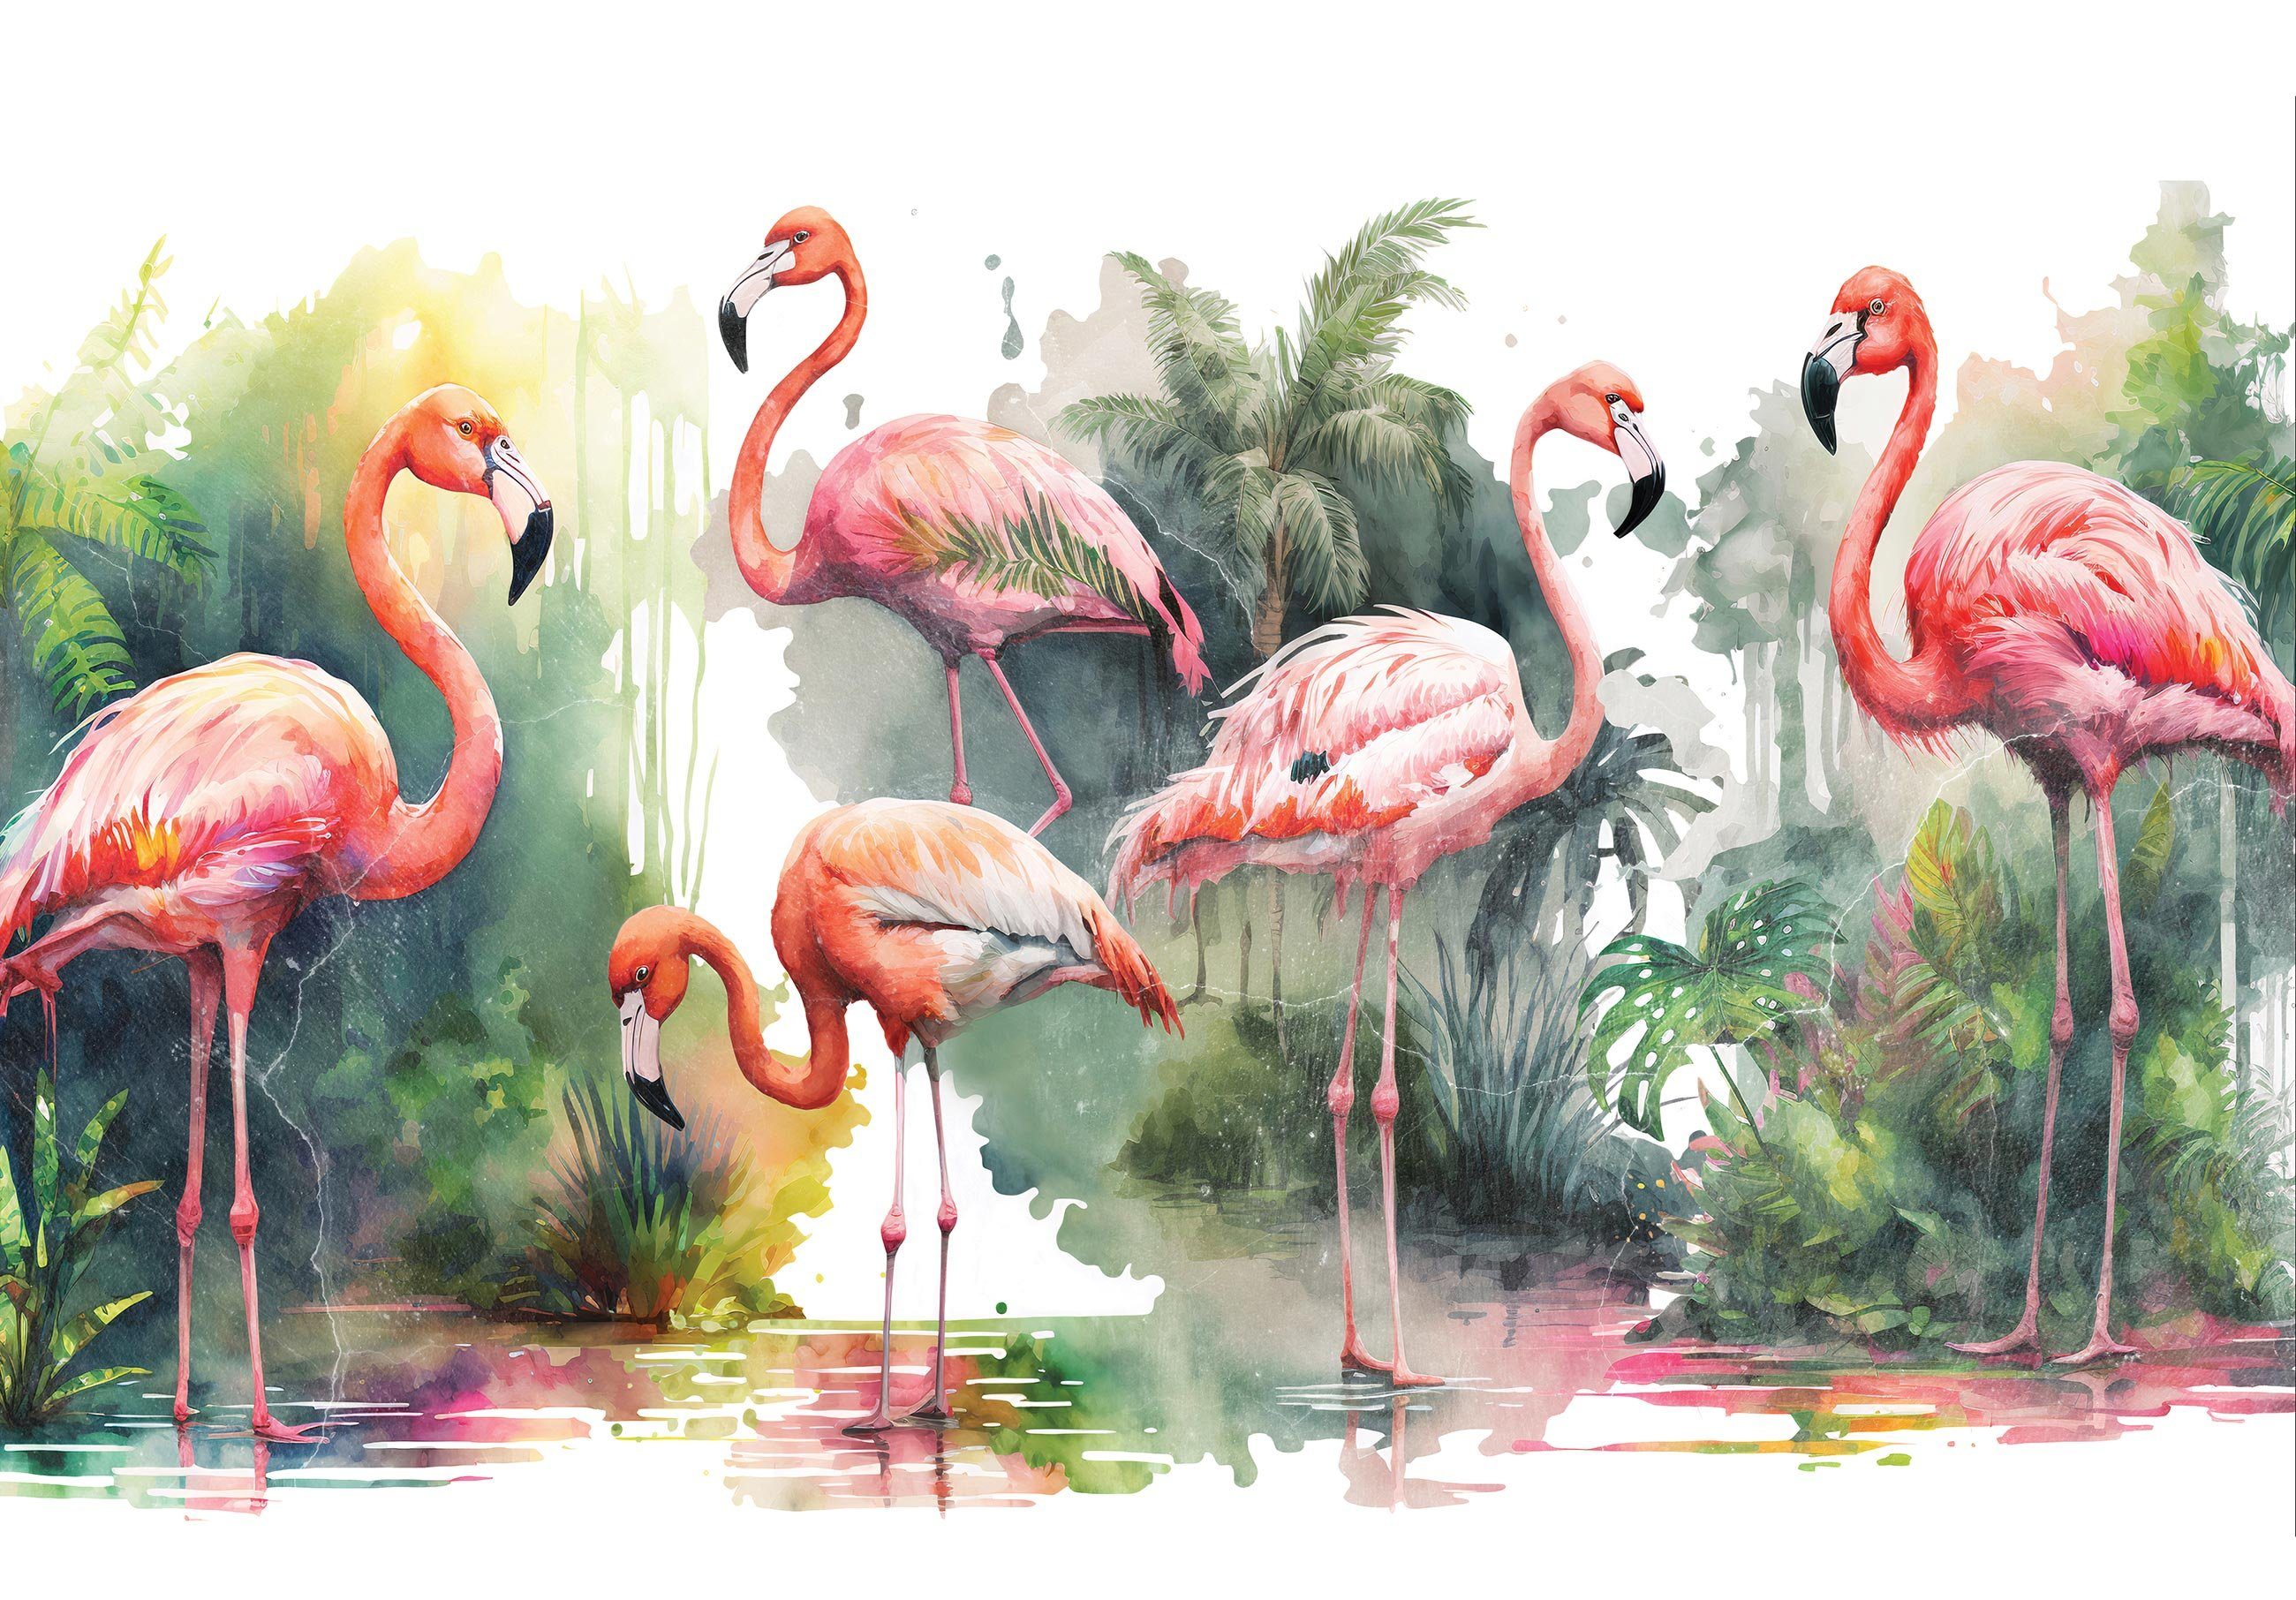 Wallarena Fototapete Flamingo Dschungel Vlies Tapete Wohnzimmer Schlafzimmer Wandtapete, Glatt, Vögel, Tropisch, Vliestapete inklusive Kleister